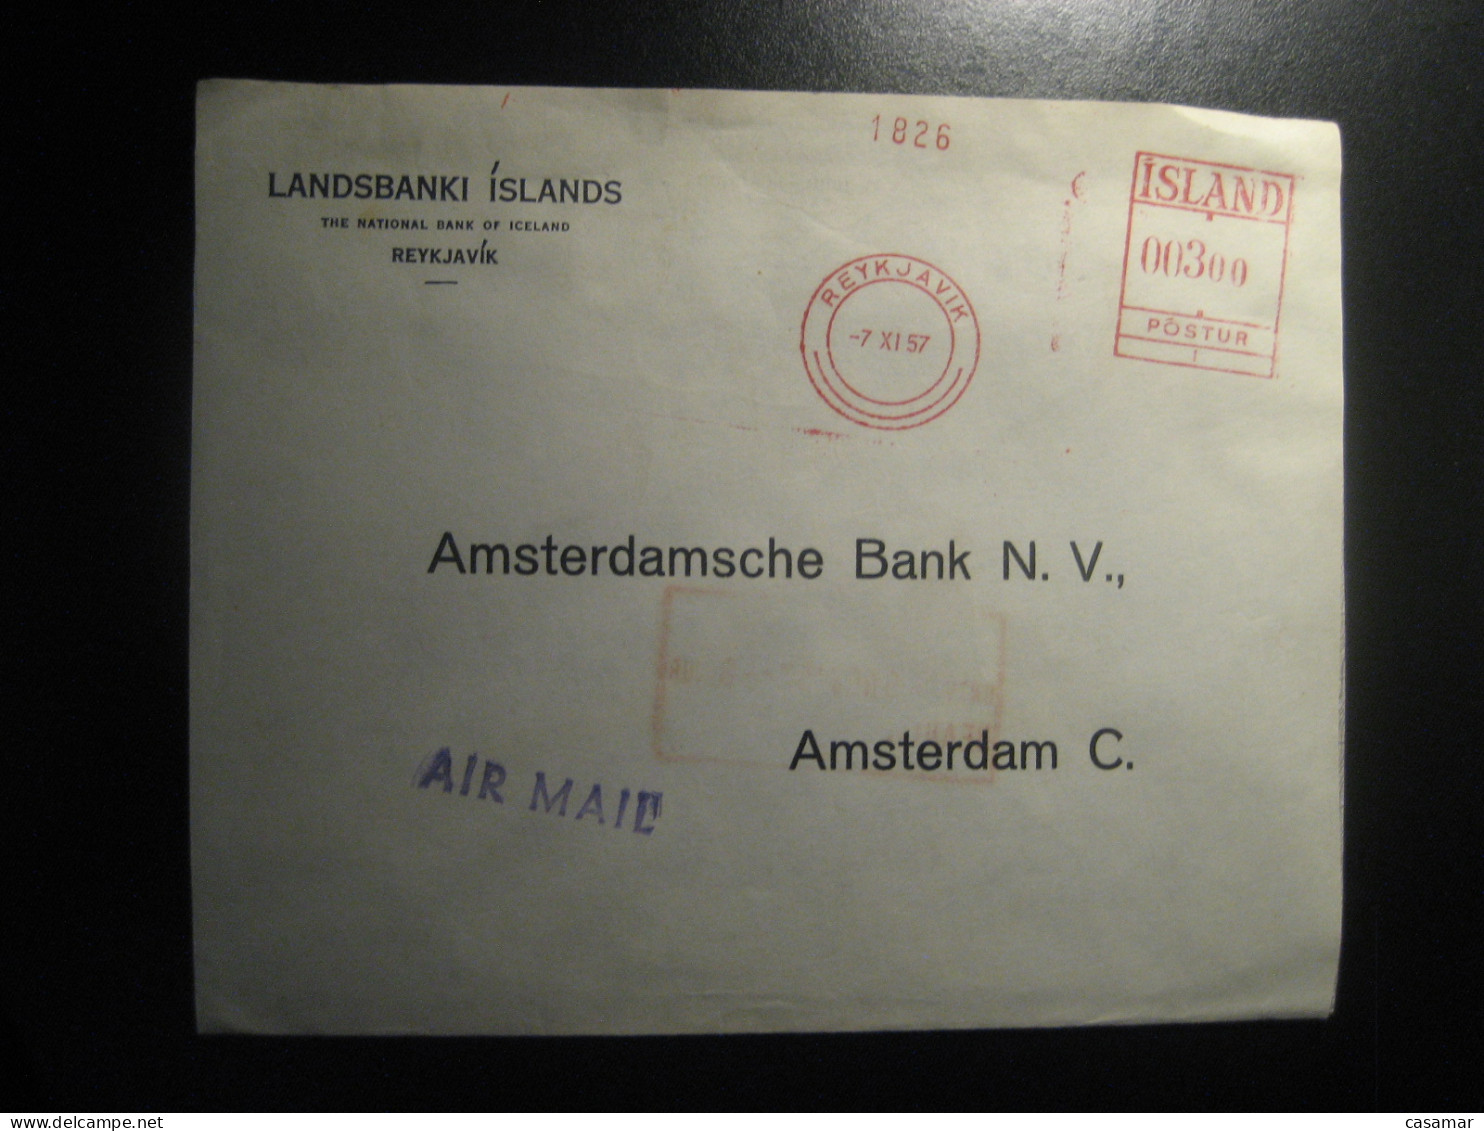 REYKJAVIK 1957 To Amsterdam Netherlands Landsbanki Islands Air Meter Mail Cancel Cover ICELAND - Lettres & Documents